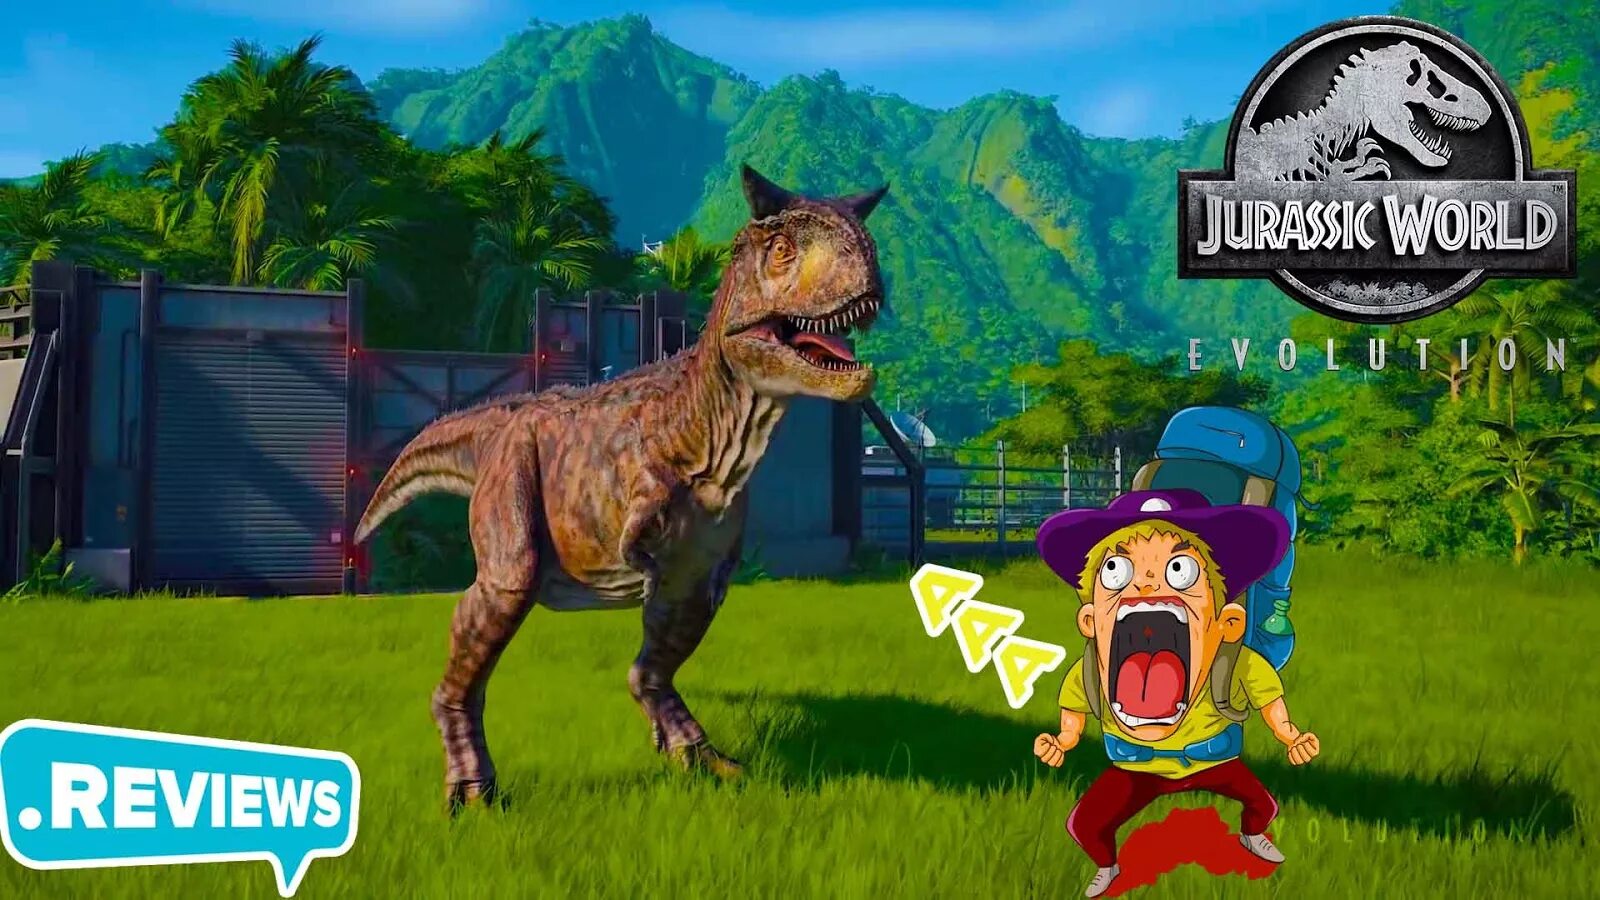 Джура ворлд Эволюшн. Игра Jurassic World Evolution PC Cover. Как поиграть в Jurassic World game без Брага вылета из игры. Что делать если лагает,вылетает Jurassic World Evolution на ПК.